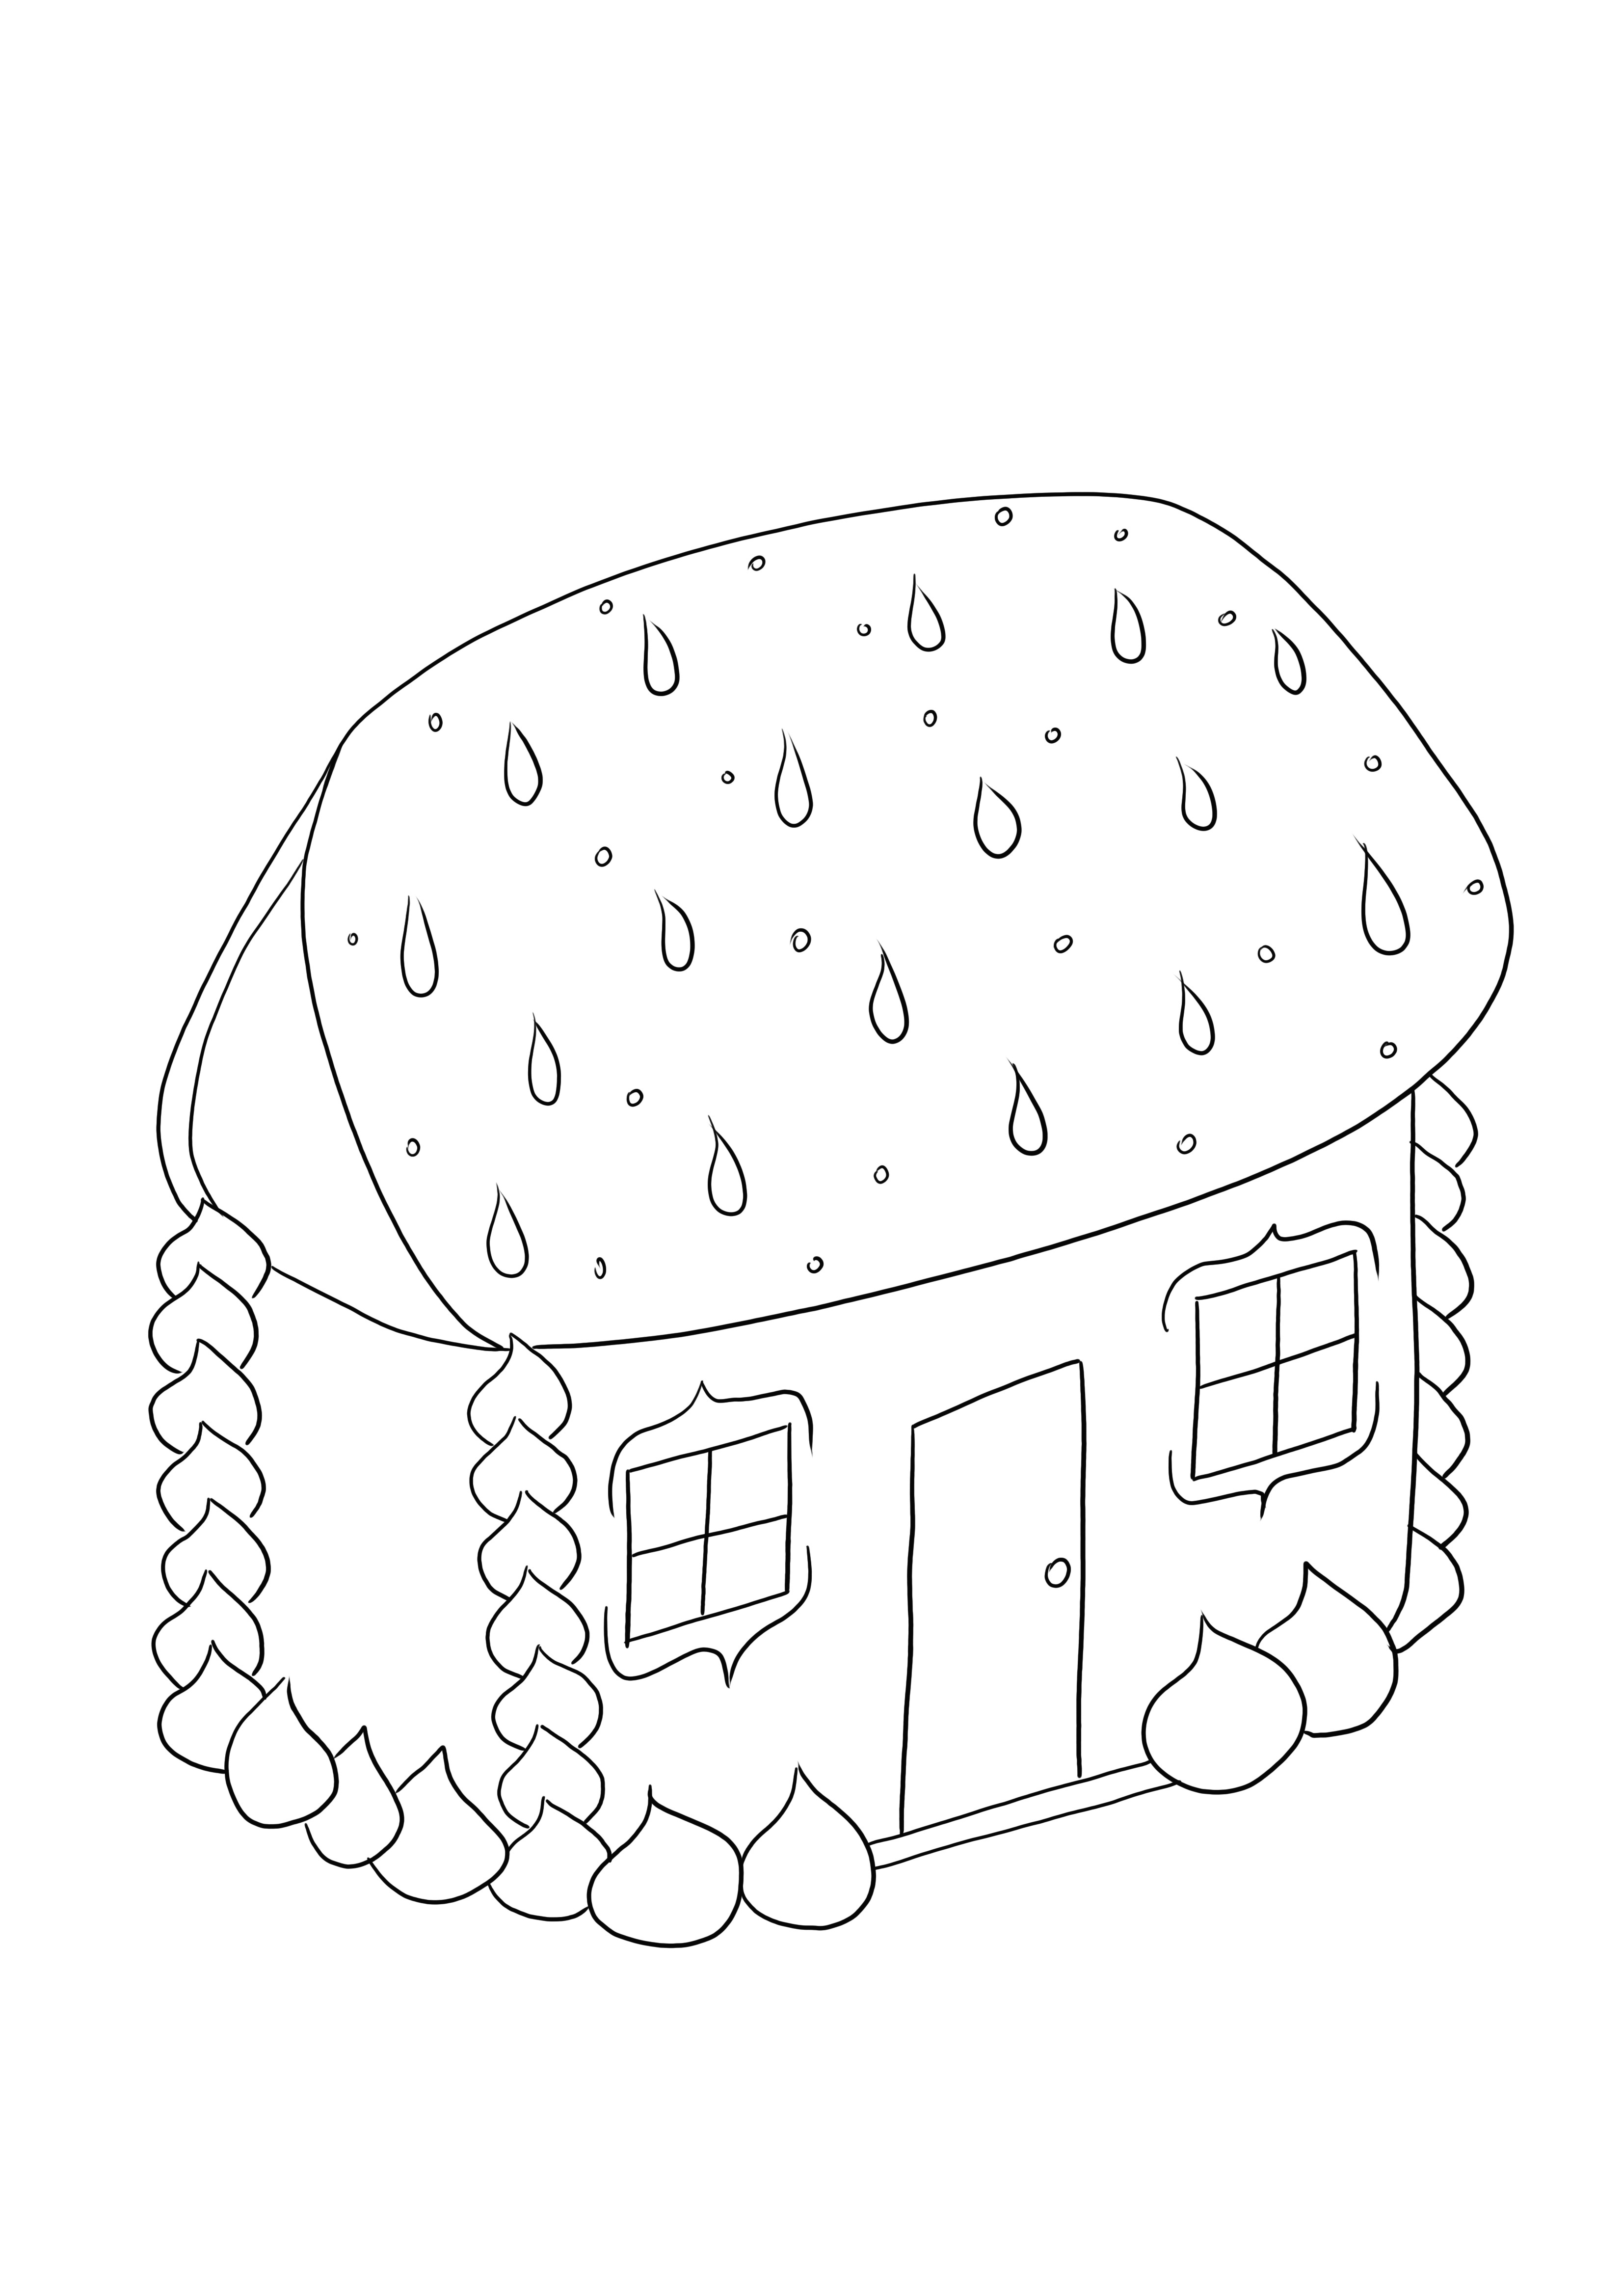 Impresión de casa de pan de jengibre de forma gratuita o guardada para una imagen posterior